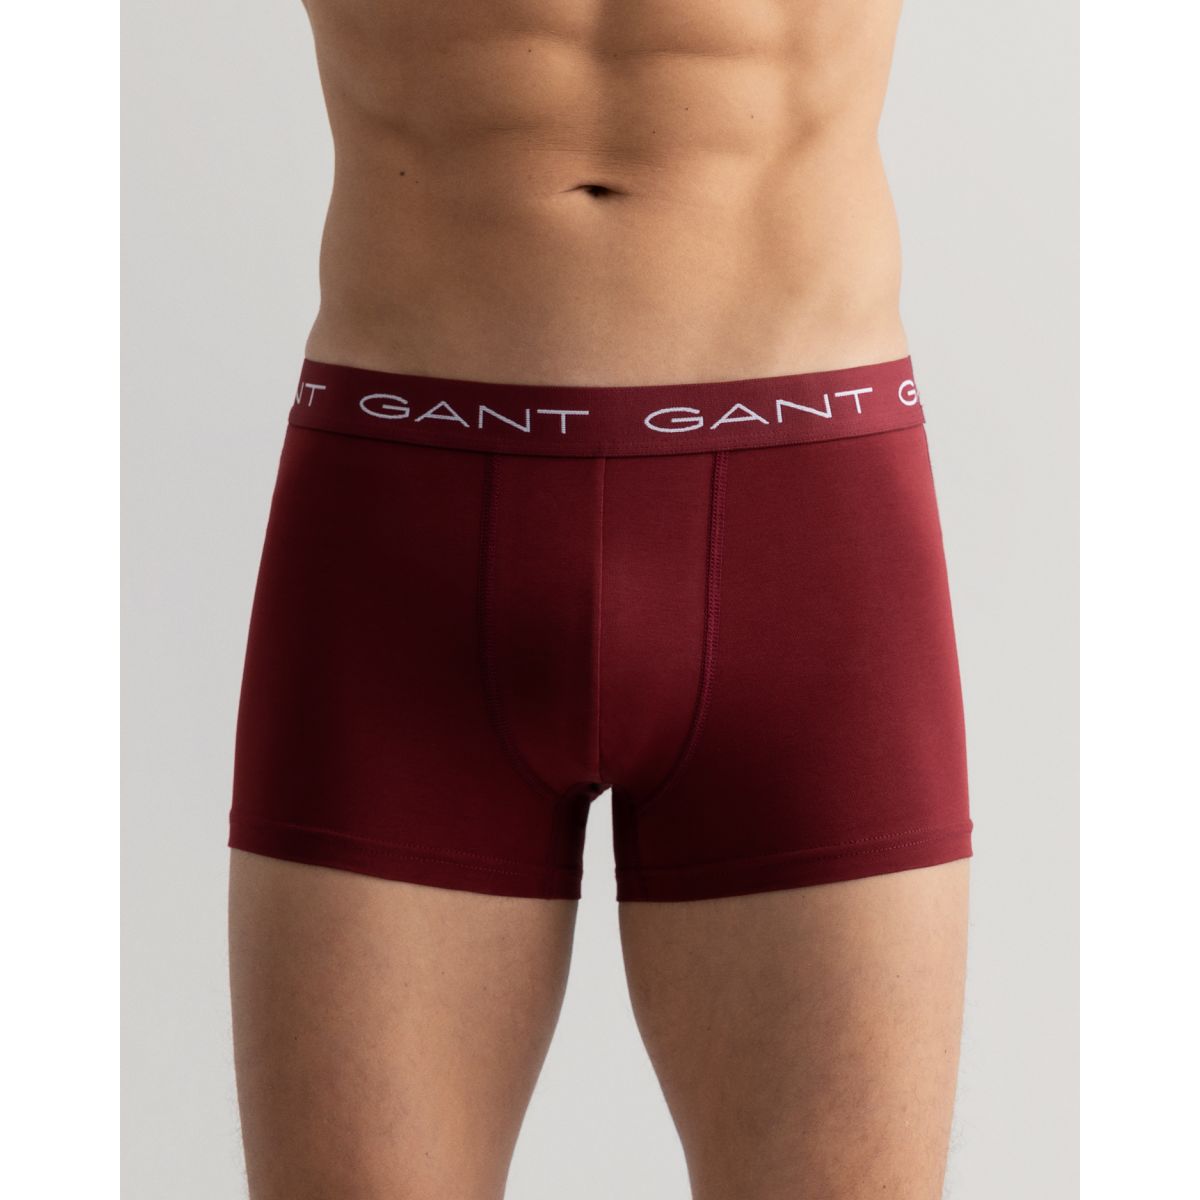 Gant Boxer Trunk 3-Pack Grønn/Marine/Rød